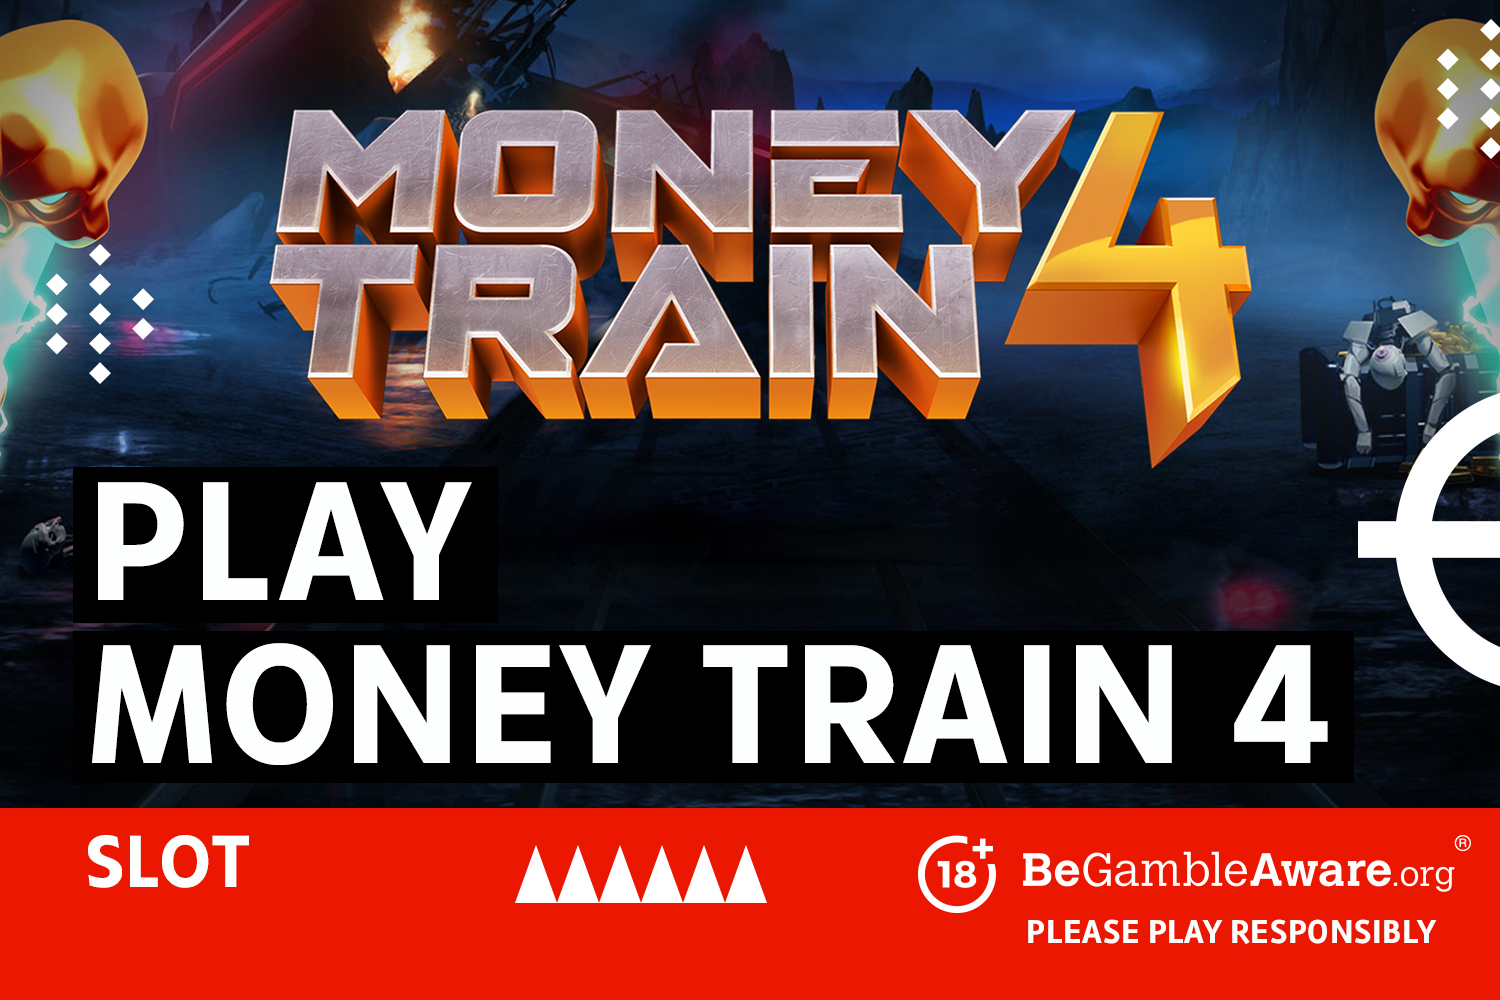 Spielen Sie den Money Train 4-Slot.  18+ BeGambleAware.org – Bitte spielen Sie verantwortungsbewusst.